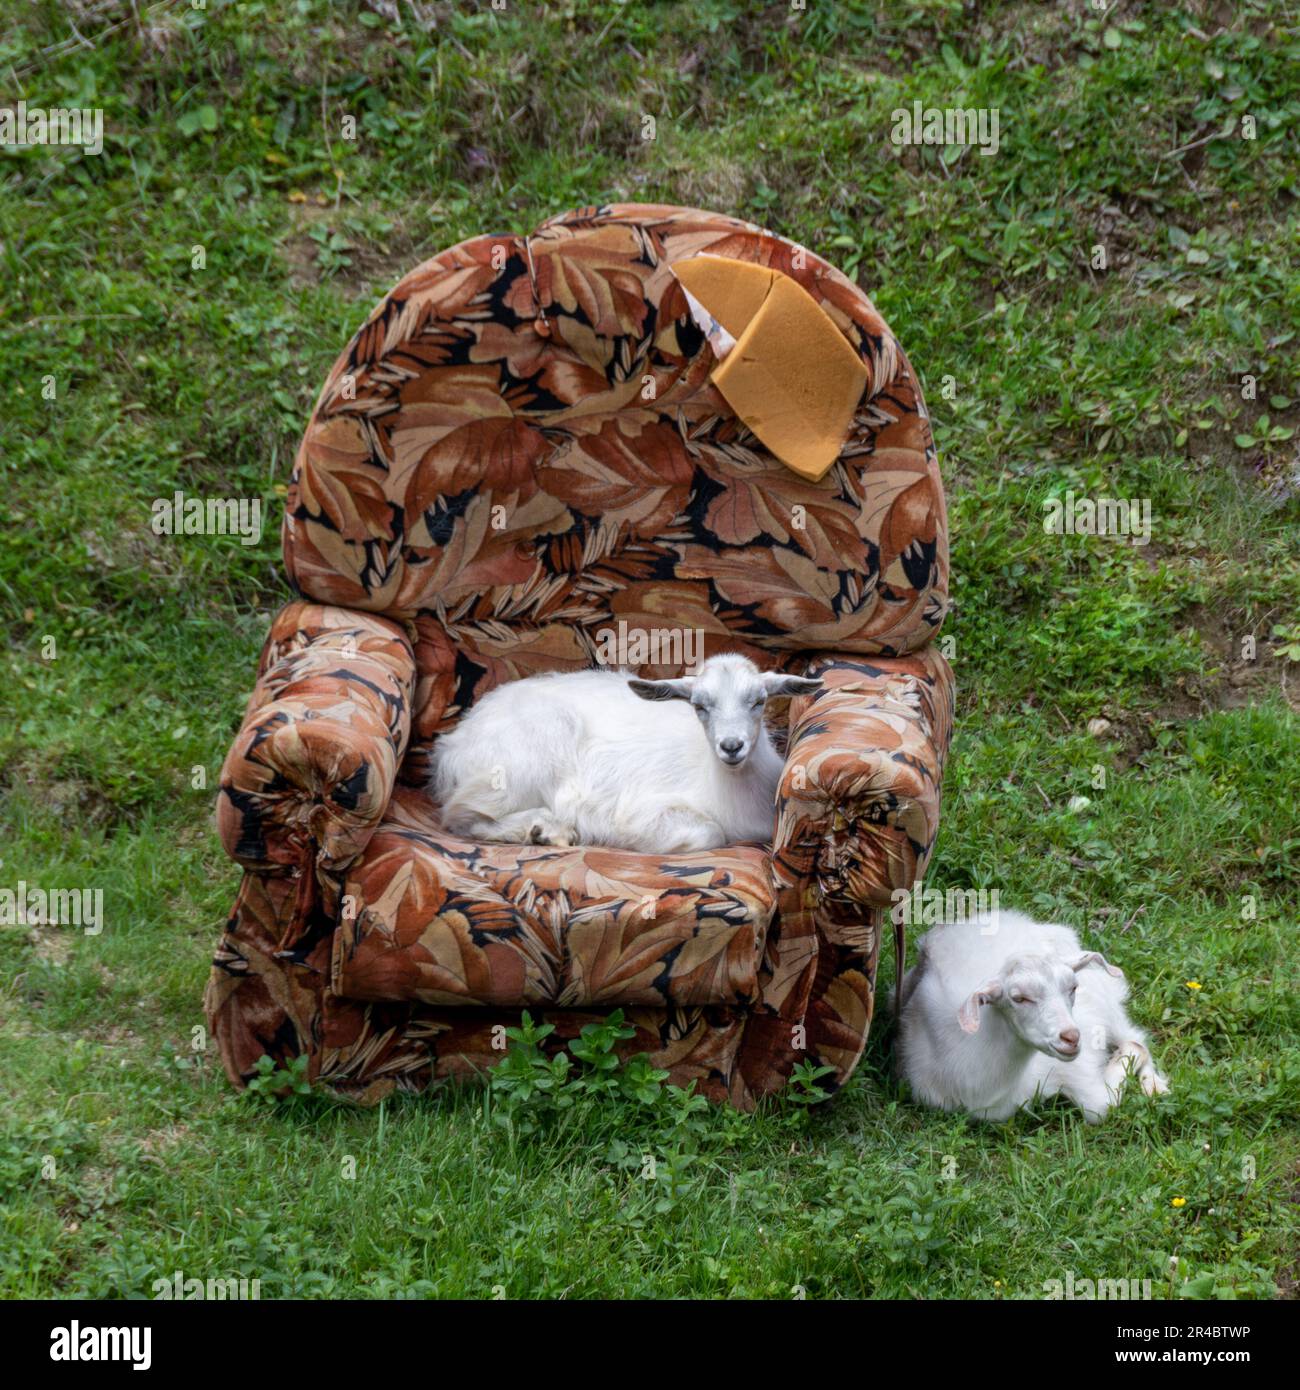 Deux jeunes chèvres mignons avec un vieux fauteuil porté dans un pré. Situation étrange, absurde et comique à la campagne Banque D'Images